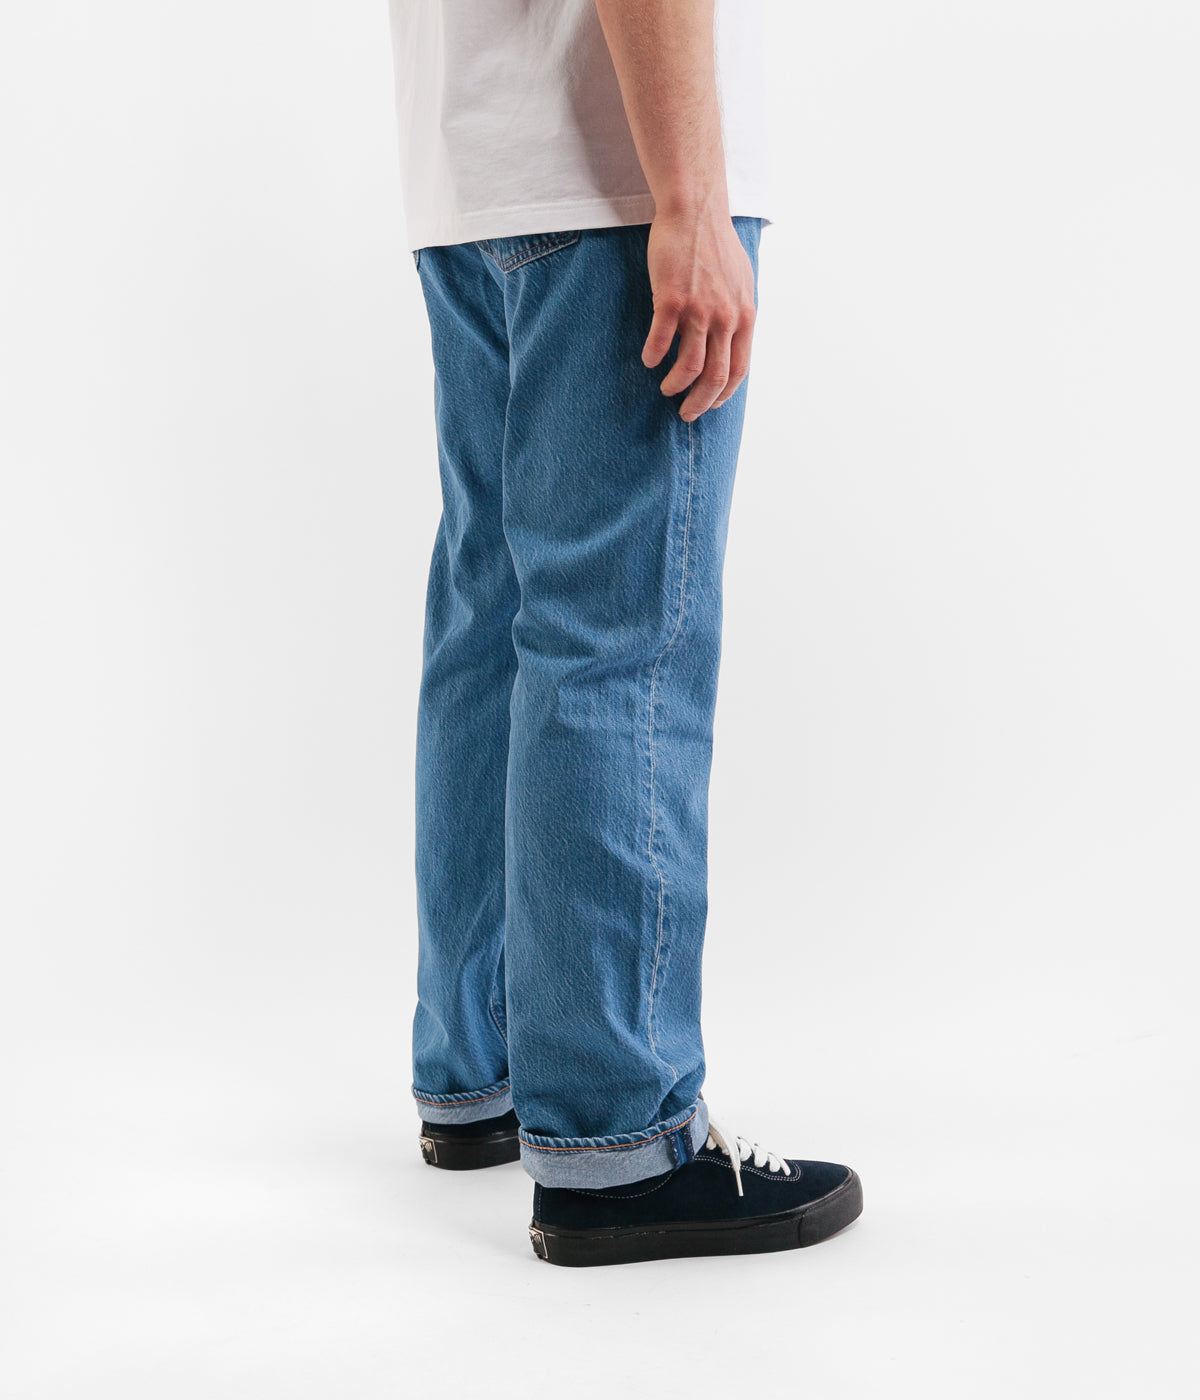 Levi's® 501® Original Fit Jeans 